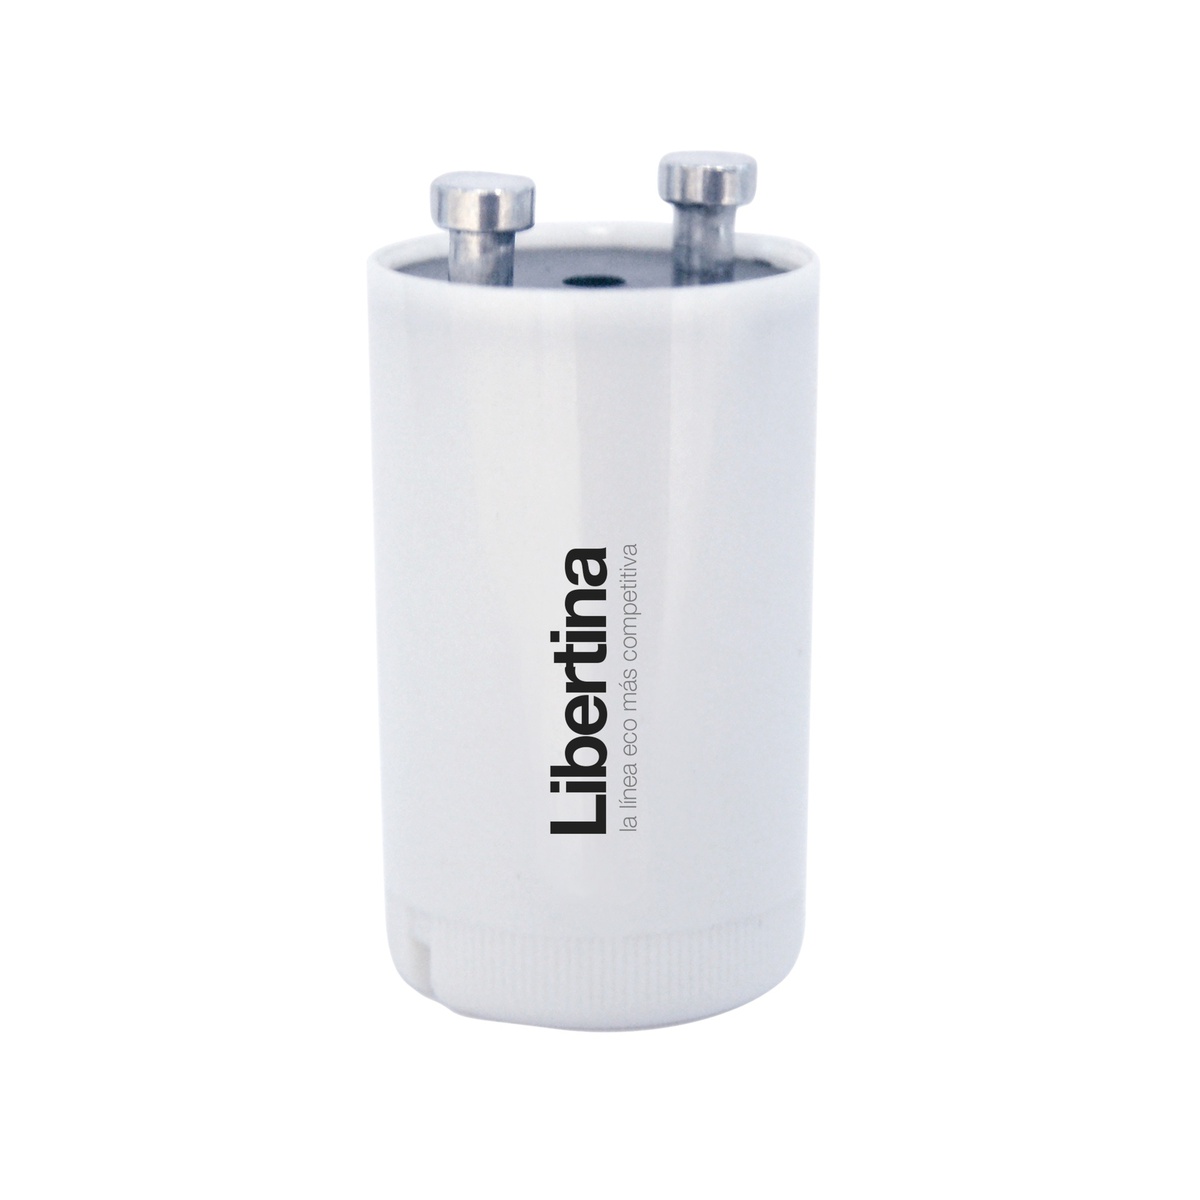 Starter for T8 LED tubes - Libertina